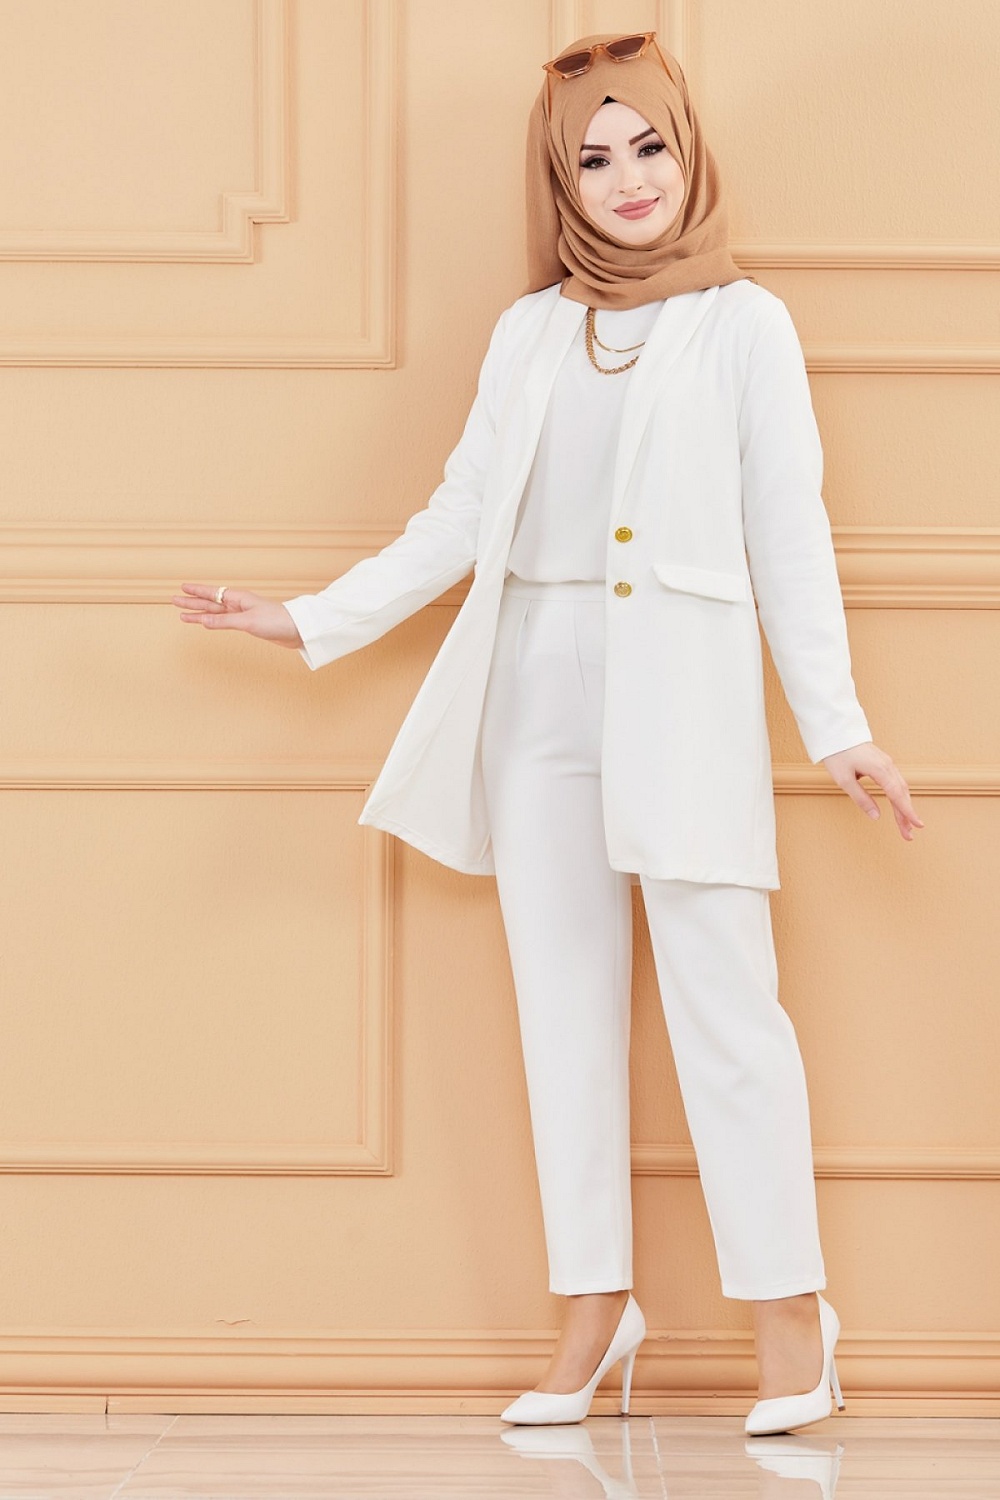 Pantalon femme classique et casual (Boutique musulmane mode hijab) -  Couleur blanc - Prêt à porter et accessoires sur